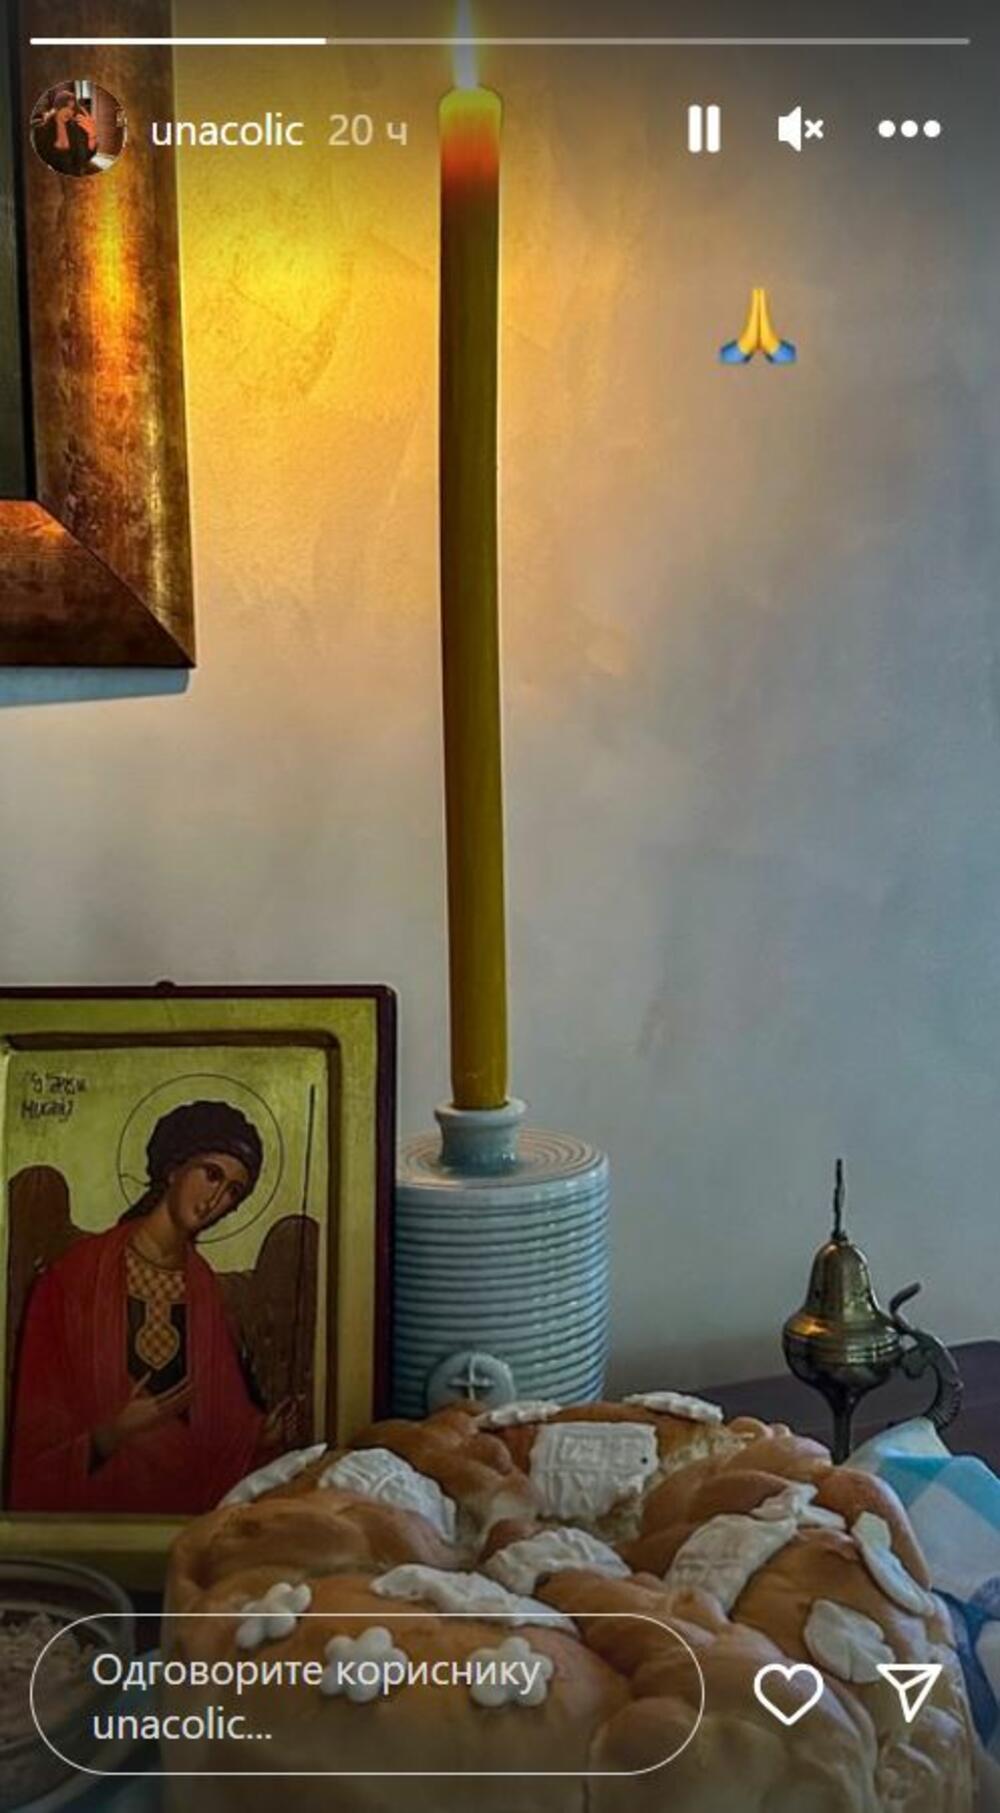 U domu Čolića je za Aranđelovdan sve bilo u znaku tradicije: slavski kola. ikona, kandilo i sveća